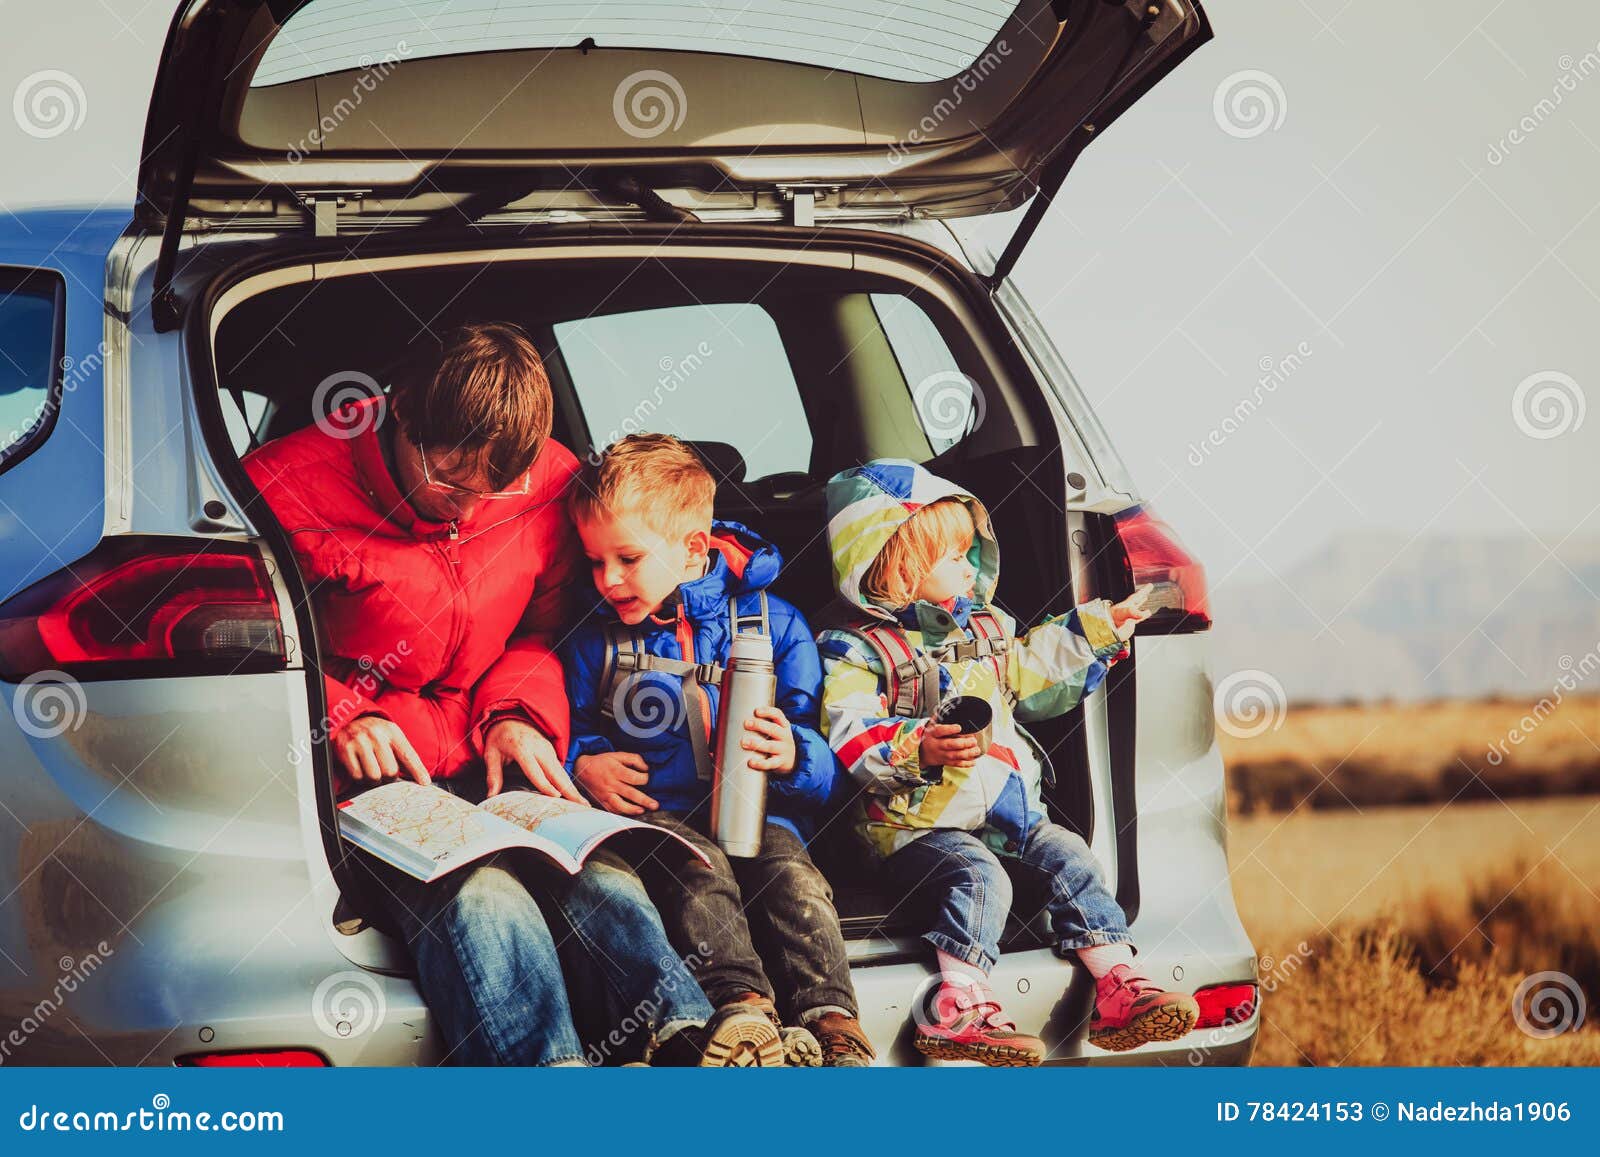 Володя вместе с семьей отправился в путешествие. Автопутешествие с детьми. Машина для путешествий семьей. Путешествие на машине с детьми. Папа и дети в путешествии.